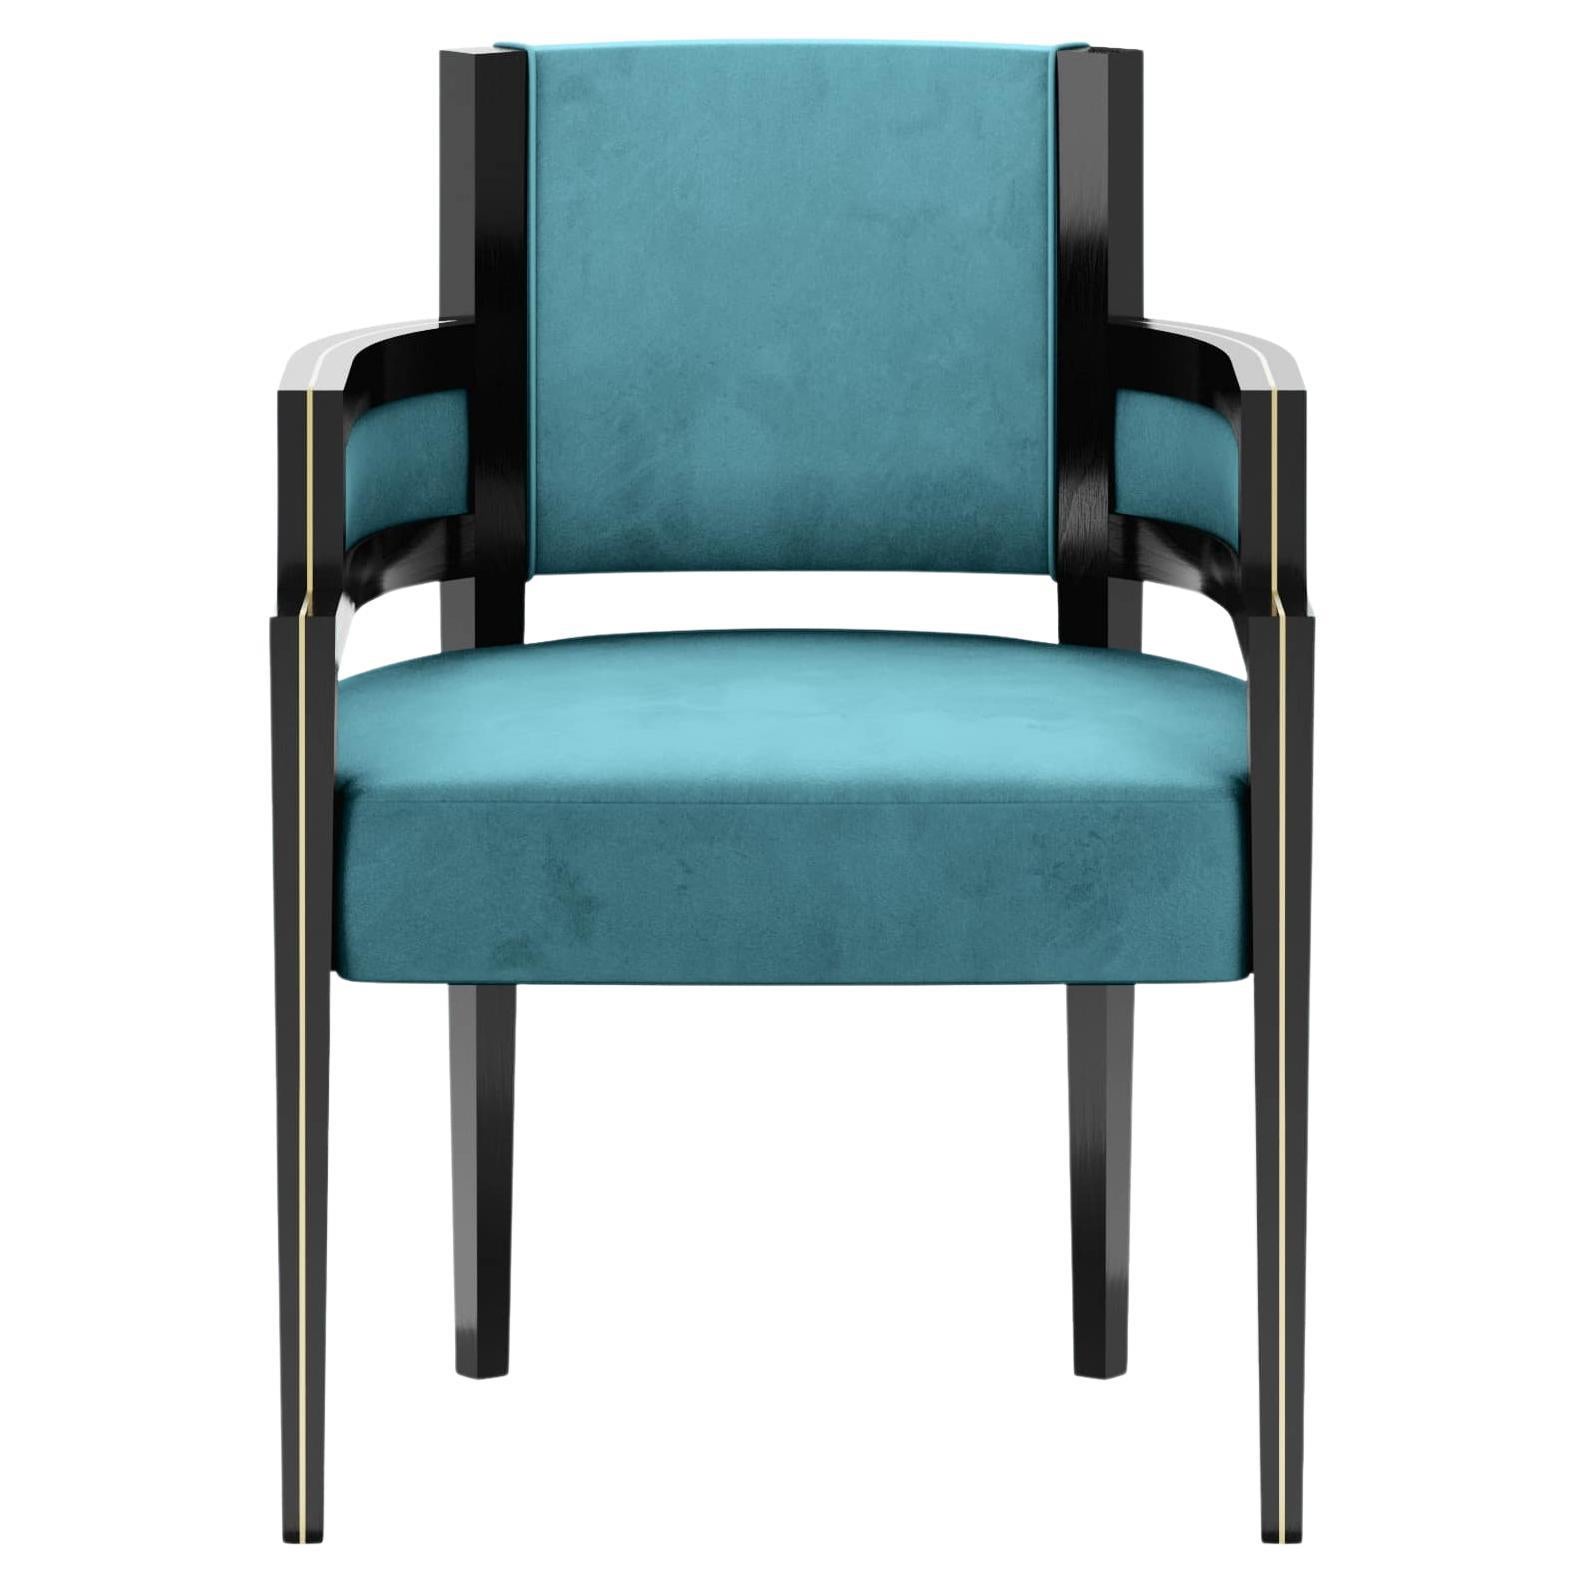 Art Deco Style Light Blue Velvet Upholstery Chair Dining Room Chair